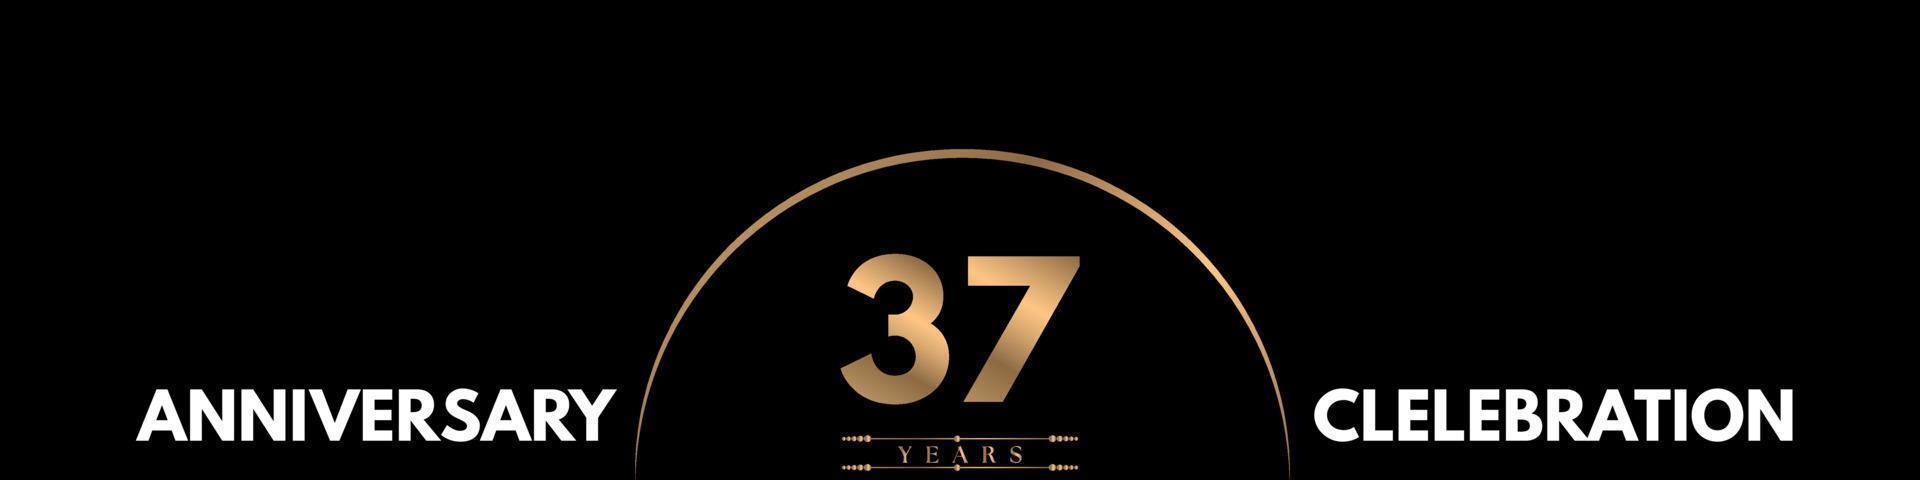 Celebración del aniversario de 37 años con un número elegante aislado en fondo negro. diseño vectorial para tarjeta de felicitación, fiesta de cumpleaños, boda, fiesta, ceremonia, tarjeta de invitación. vector